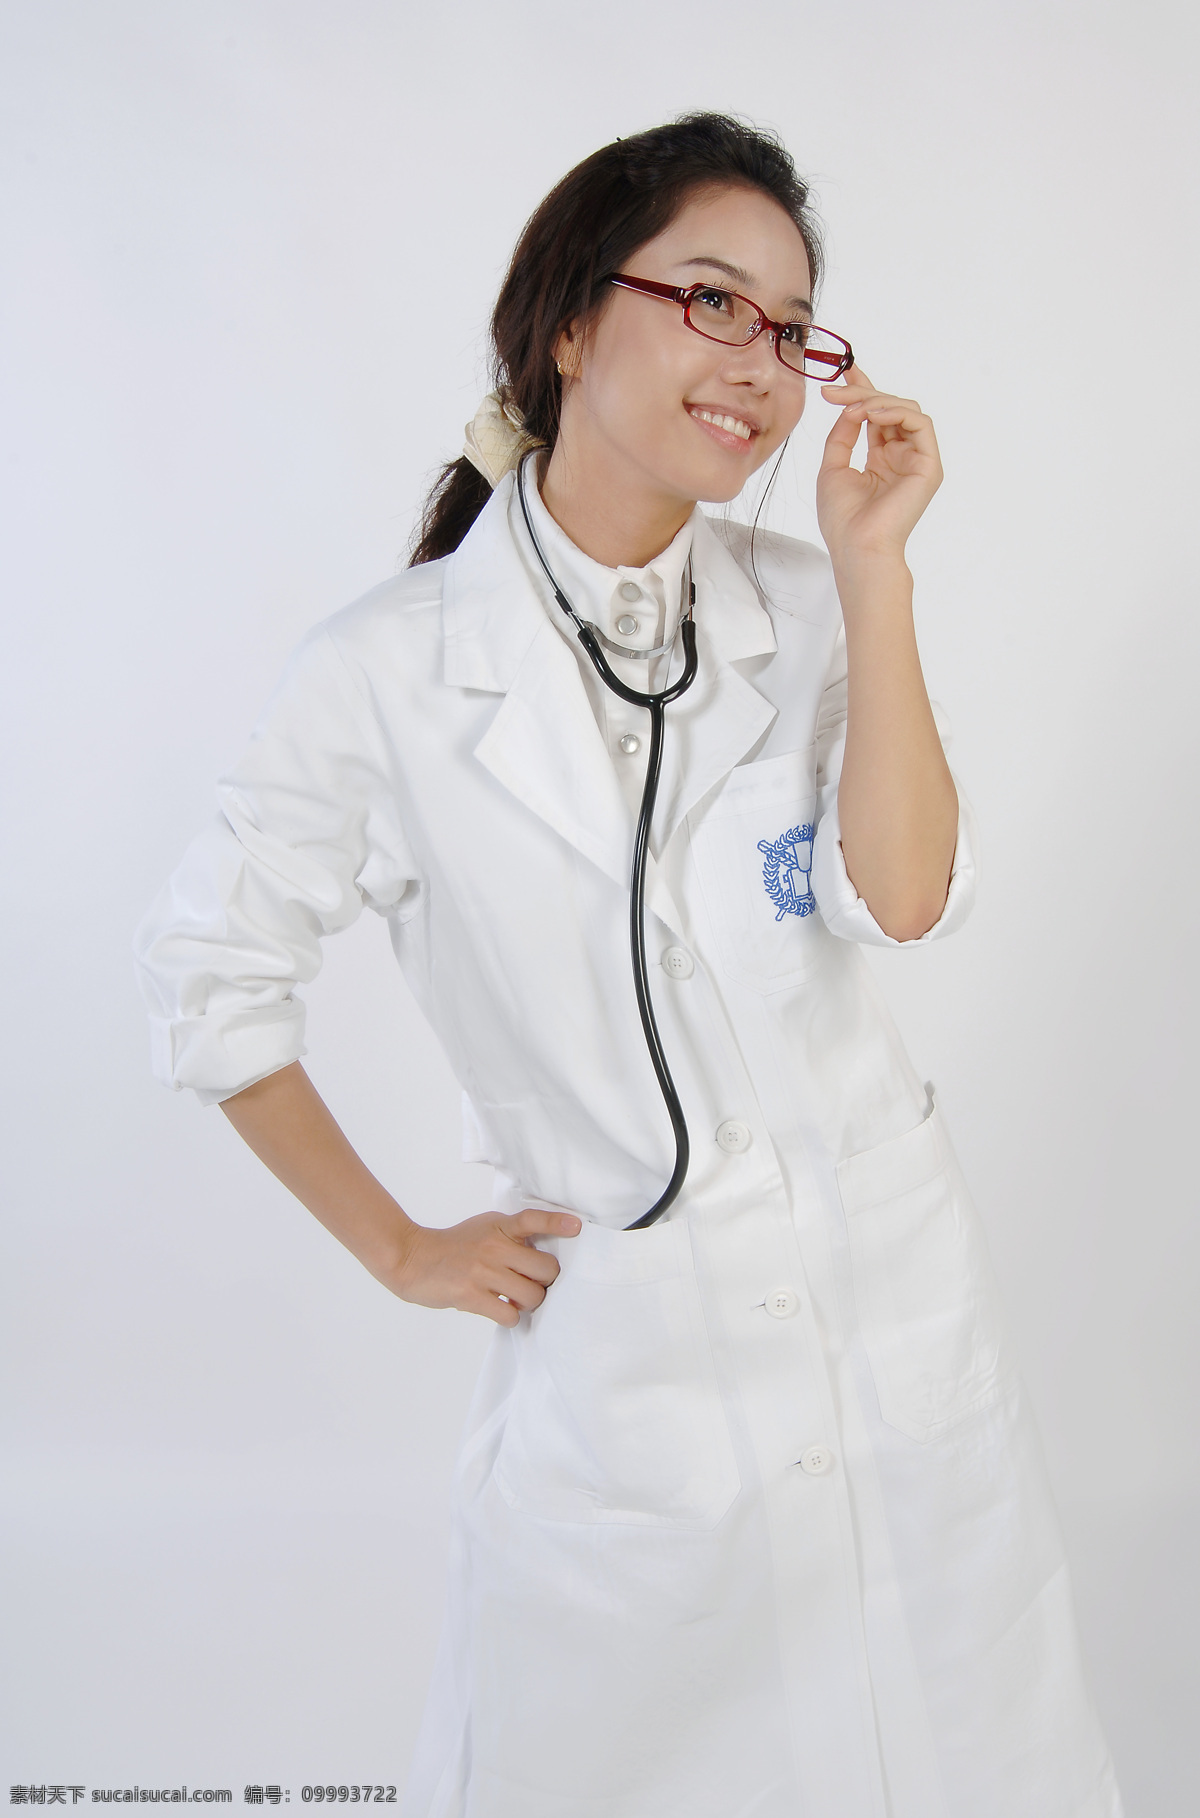 女医生 护士 医生 医疗 听诊器 女性 女人 人物 职业人物 人物图库 高清图片 微笑 可爱表情 商务人士 人物图片